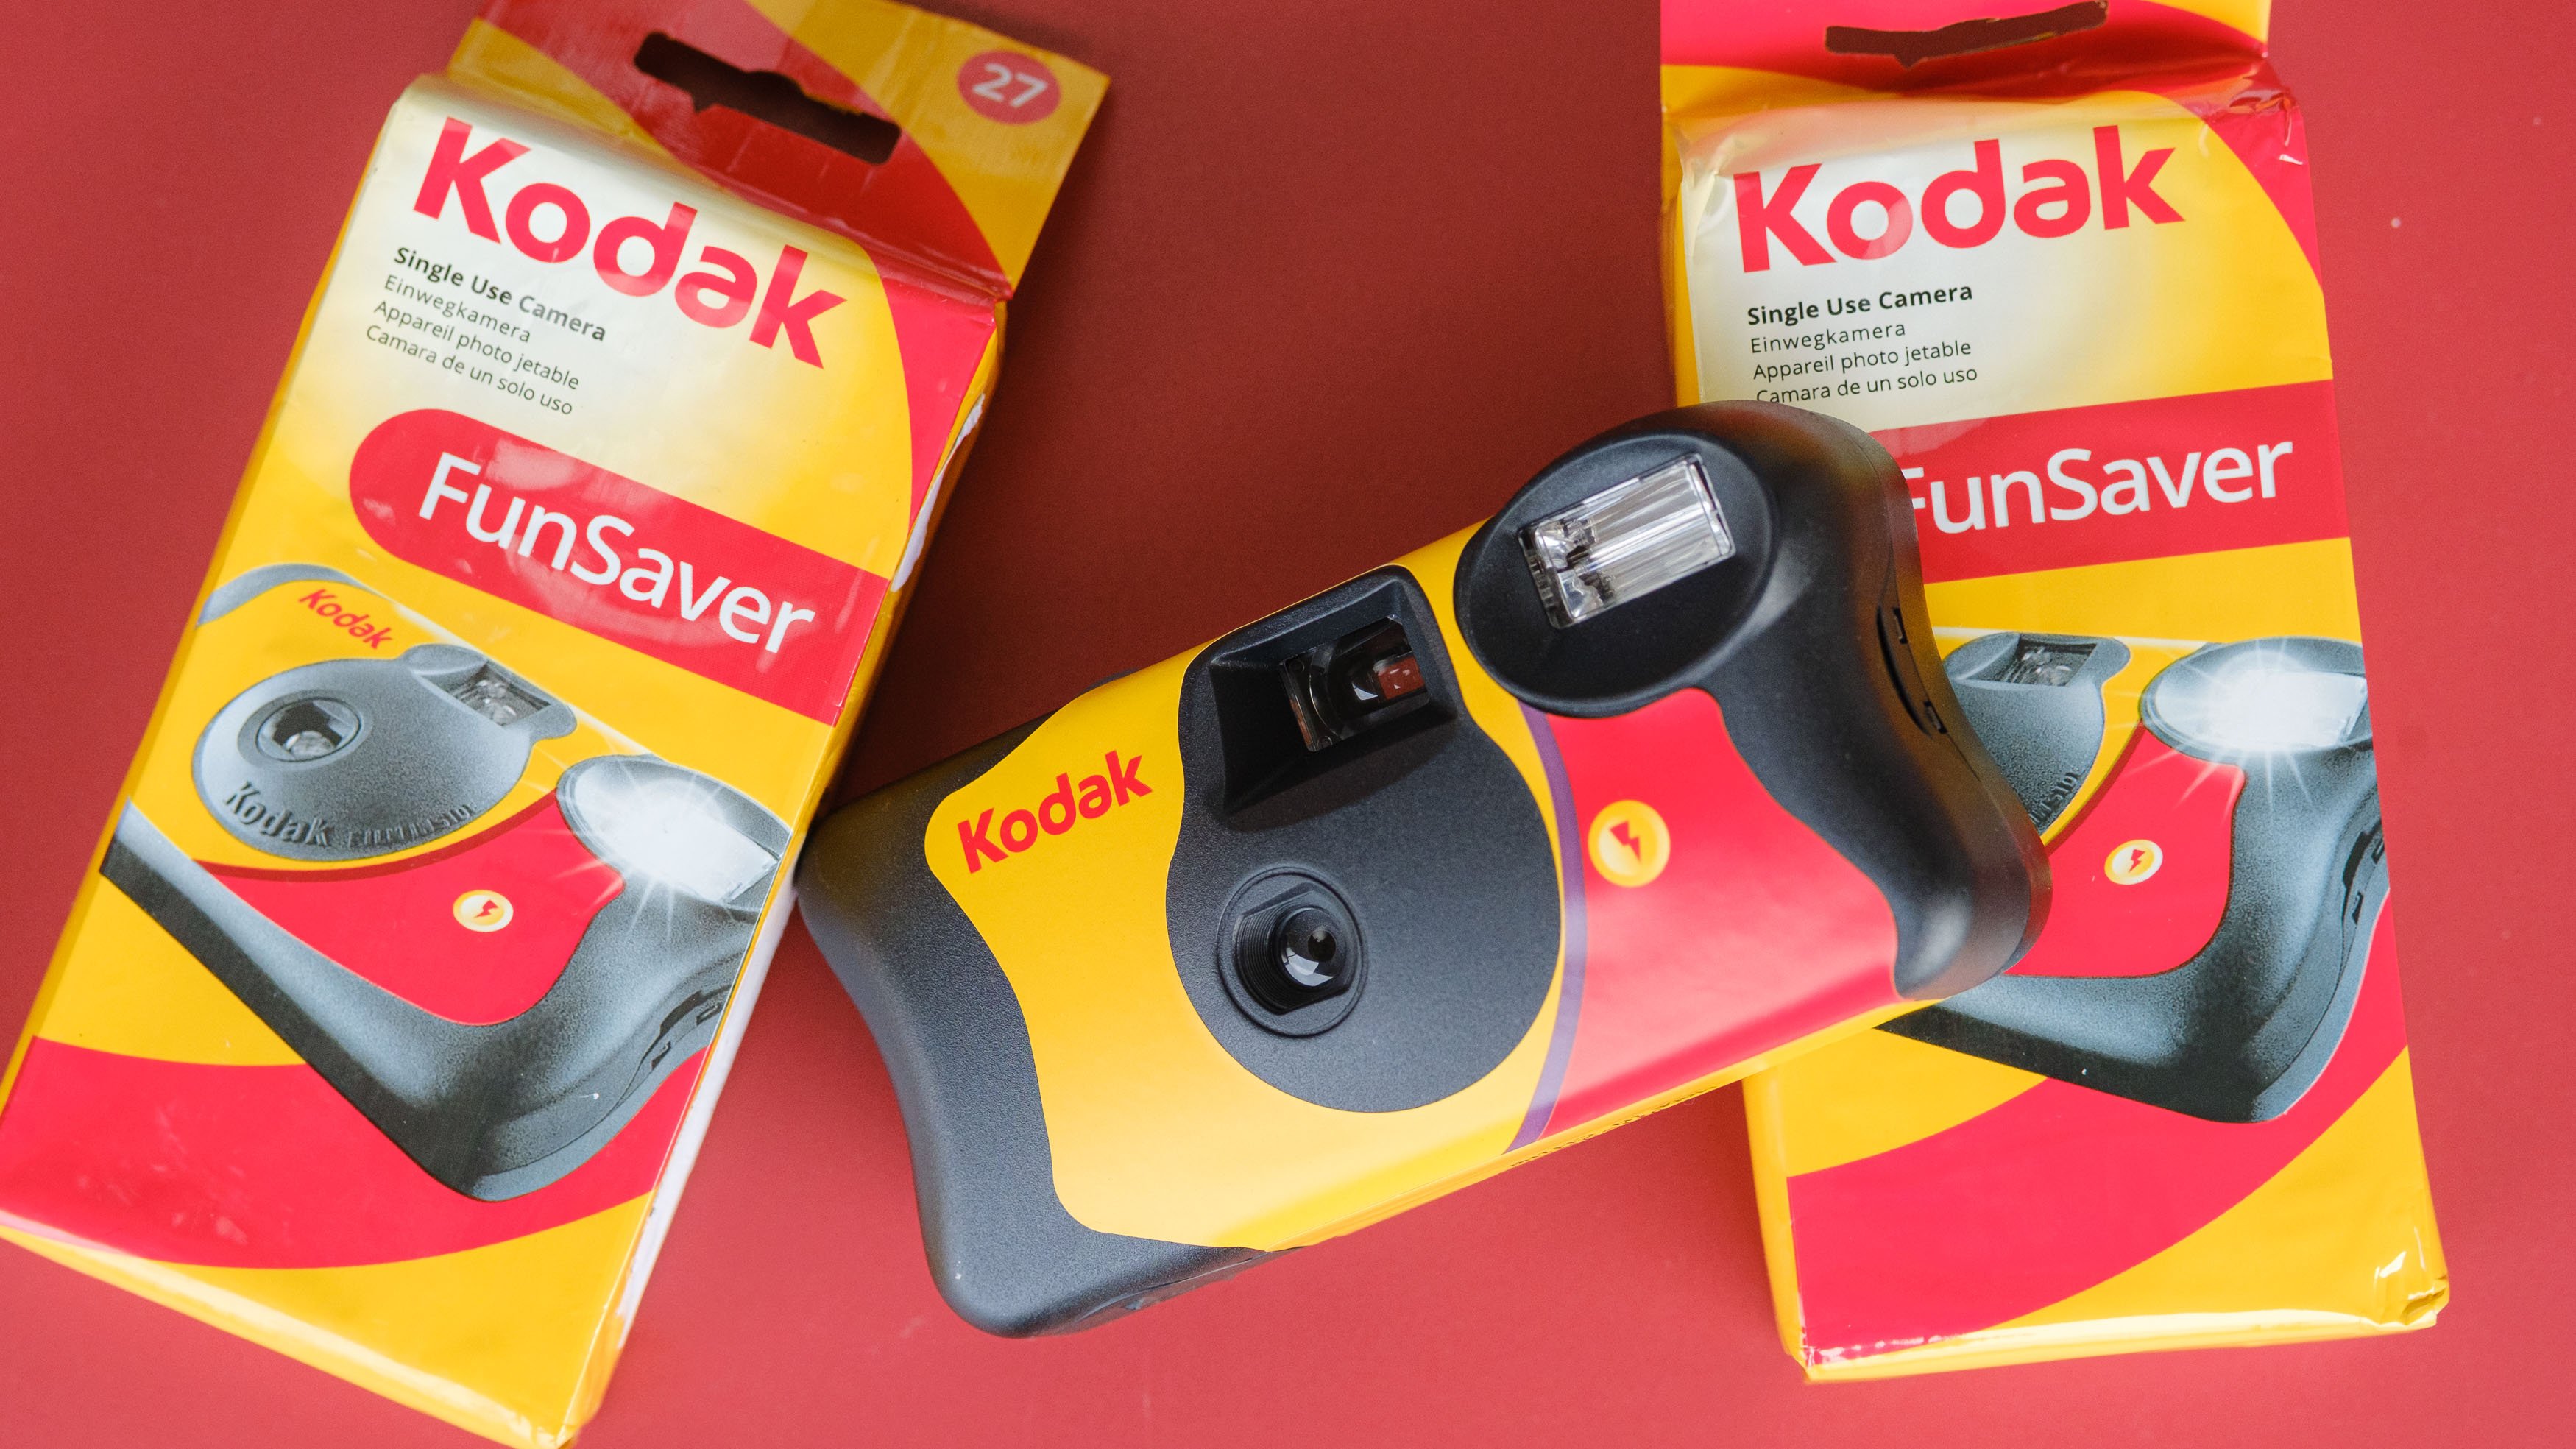 Kodak Funsaver camera.